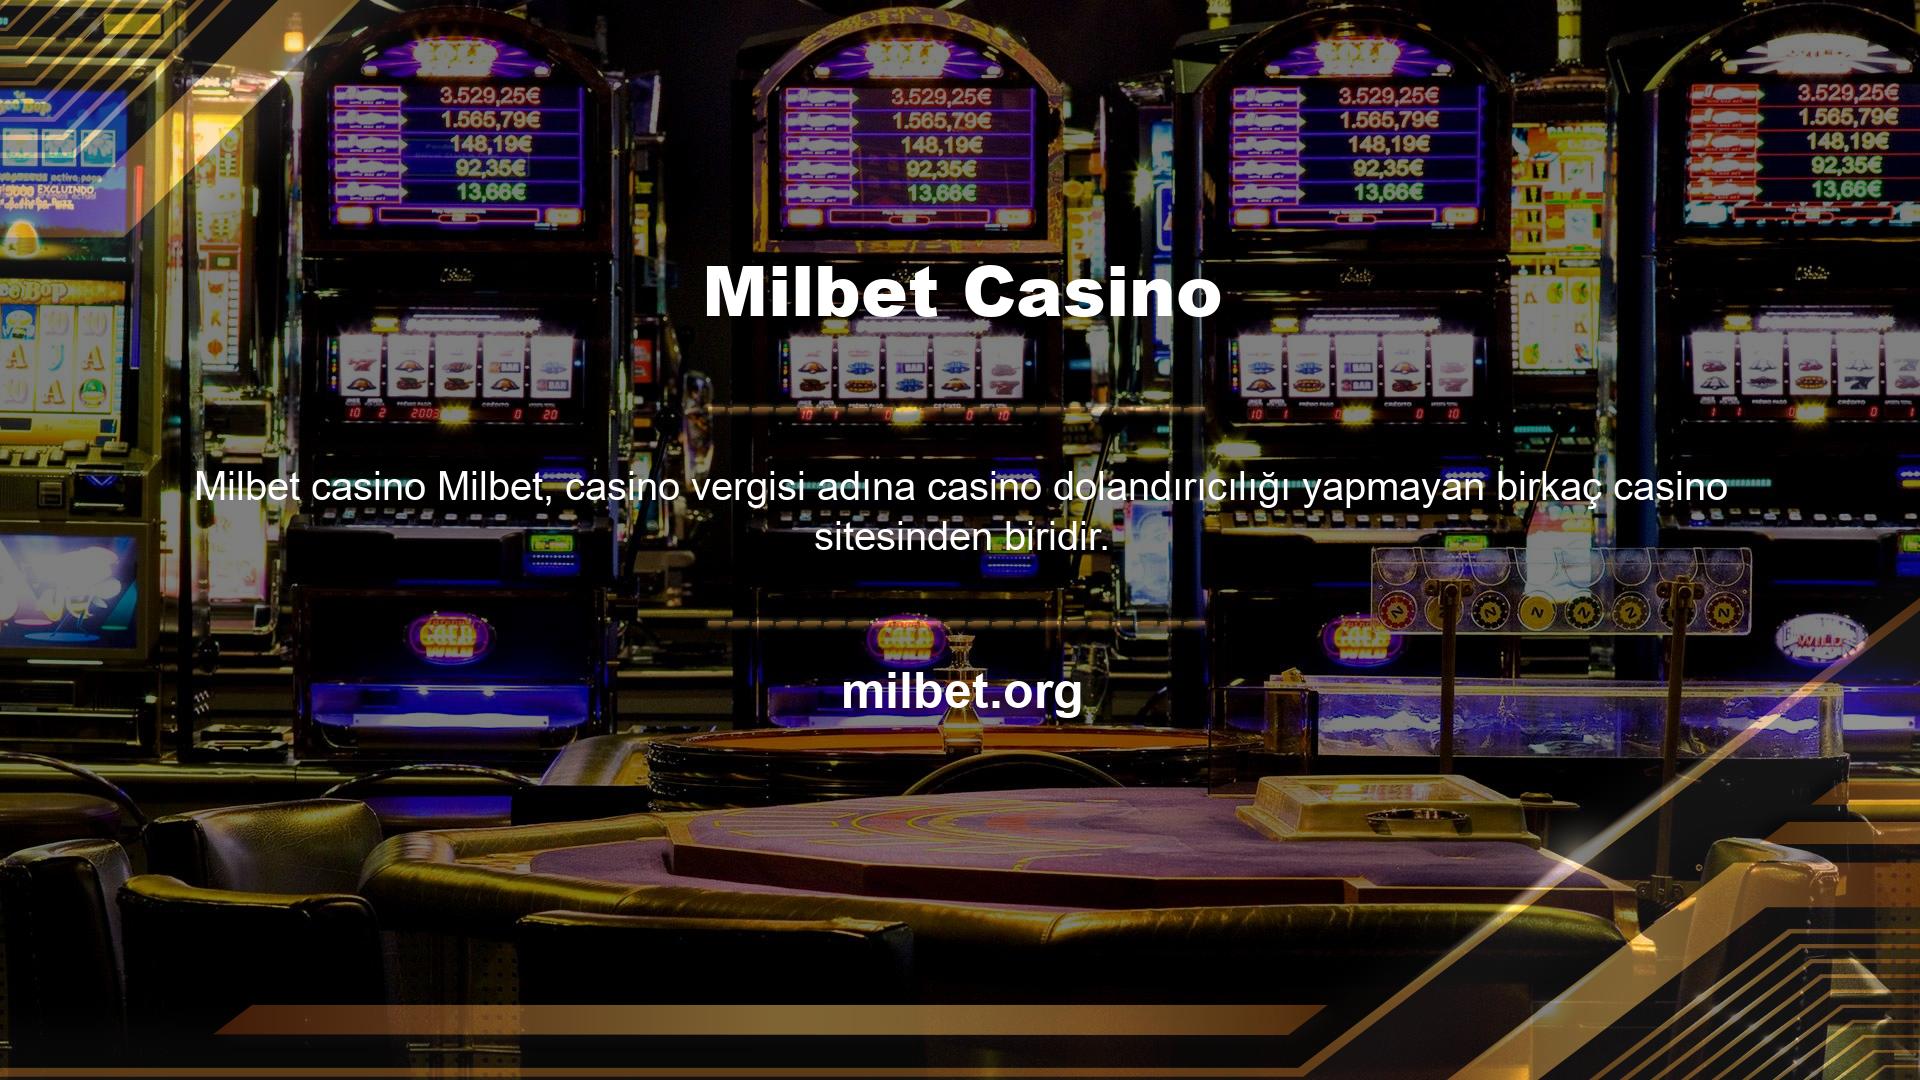 Casino endüstrisinde yaygın olan şey, gerçek zamanlı casino vergileri adına dolandırıcılık yapan lisanssız casino sitelerinin işletmeleri ve kullanıcıları tarafından anlaşılmıyor